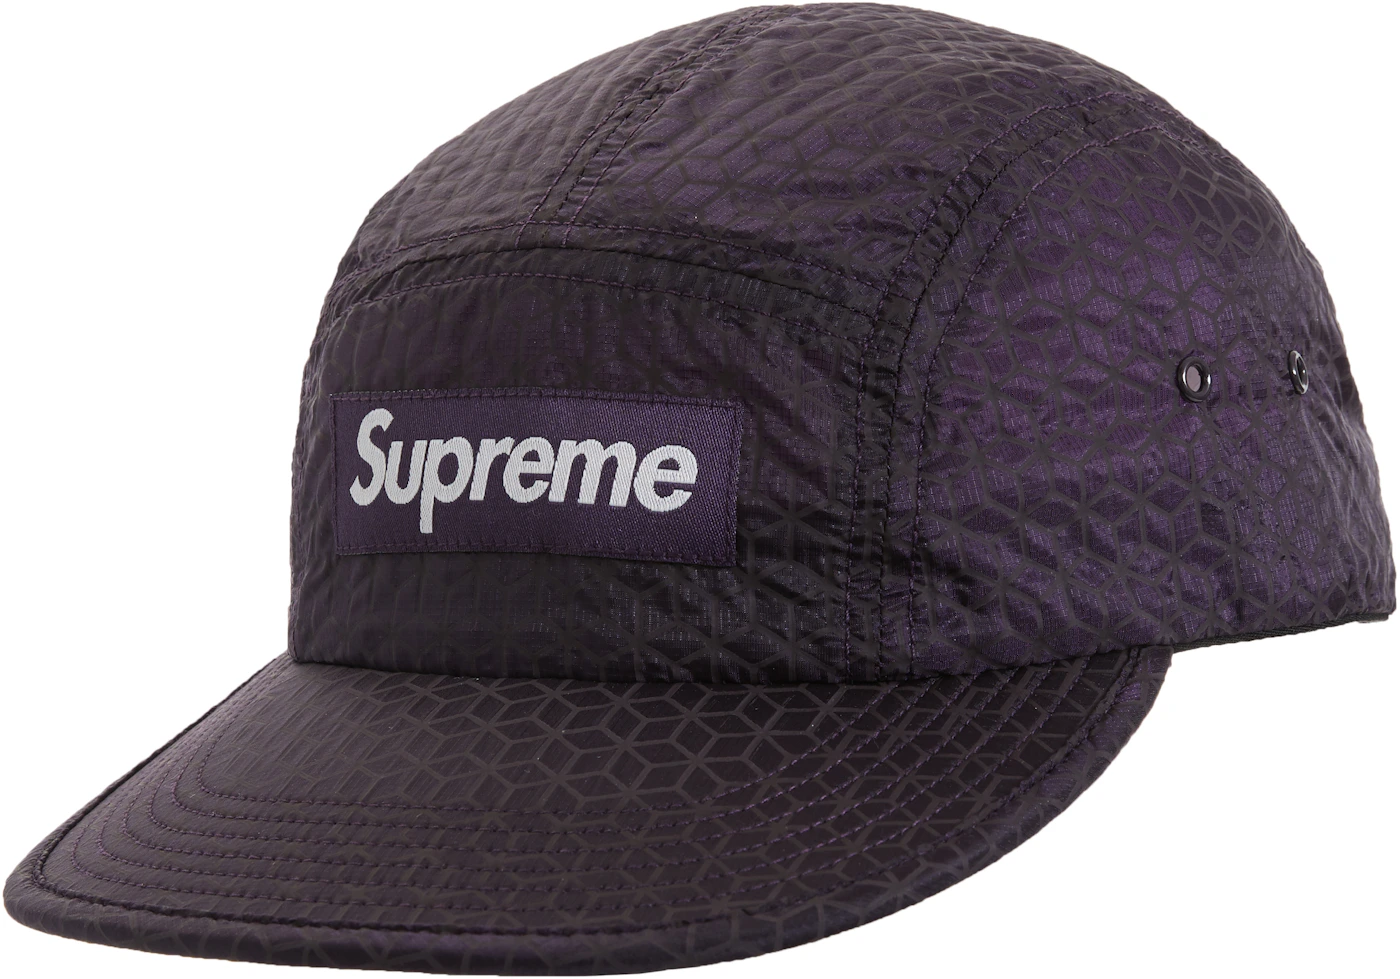 supreme cap original